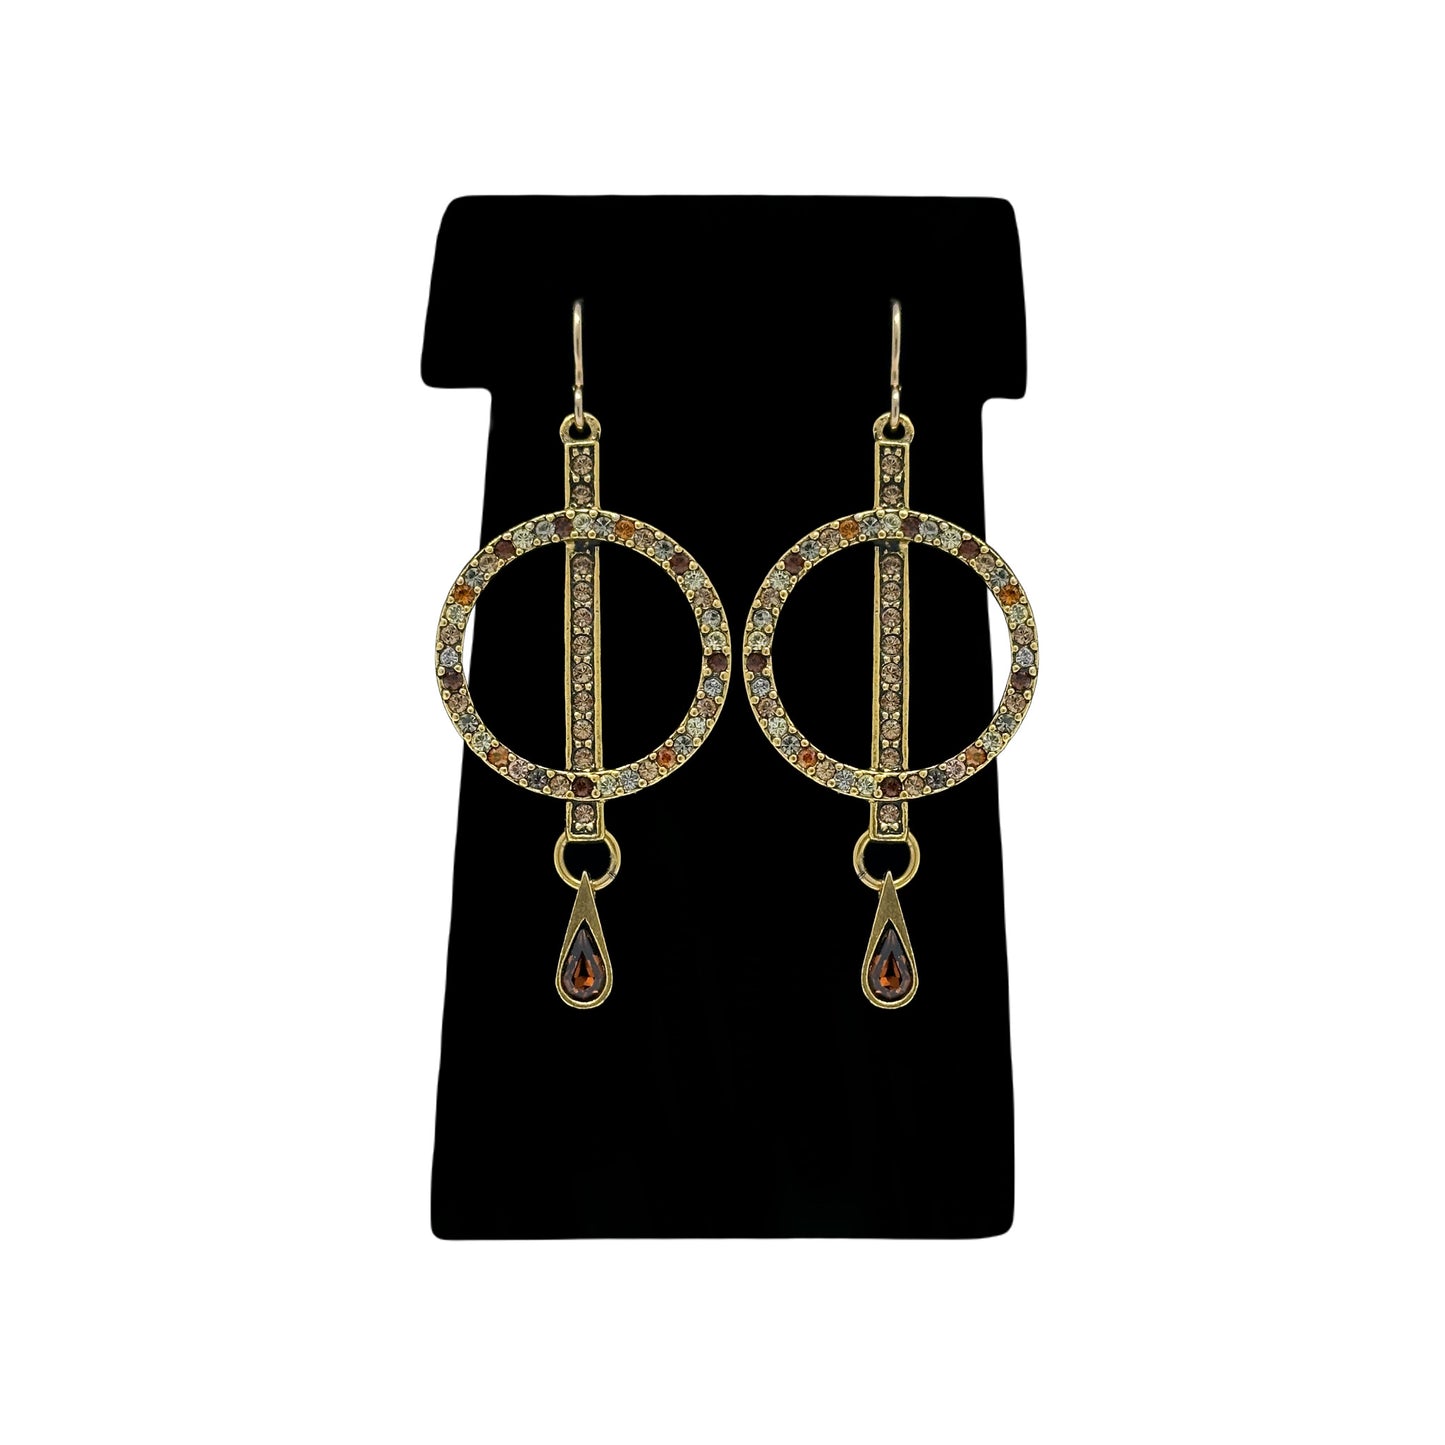 Patricia Locke Kensington Earrings in Gold Flax